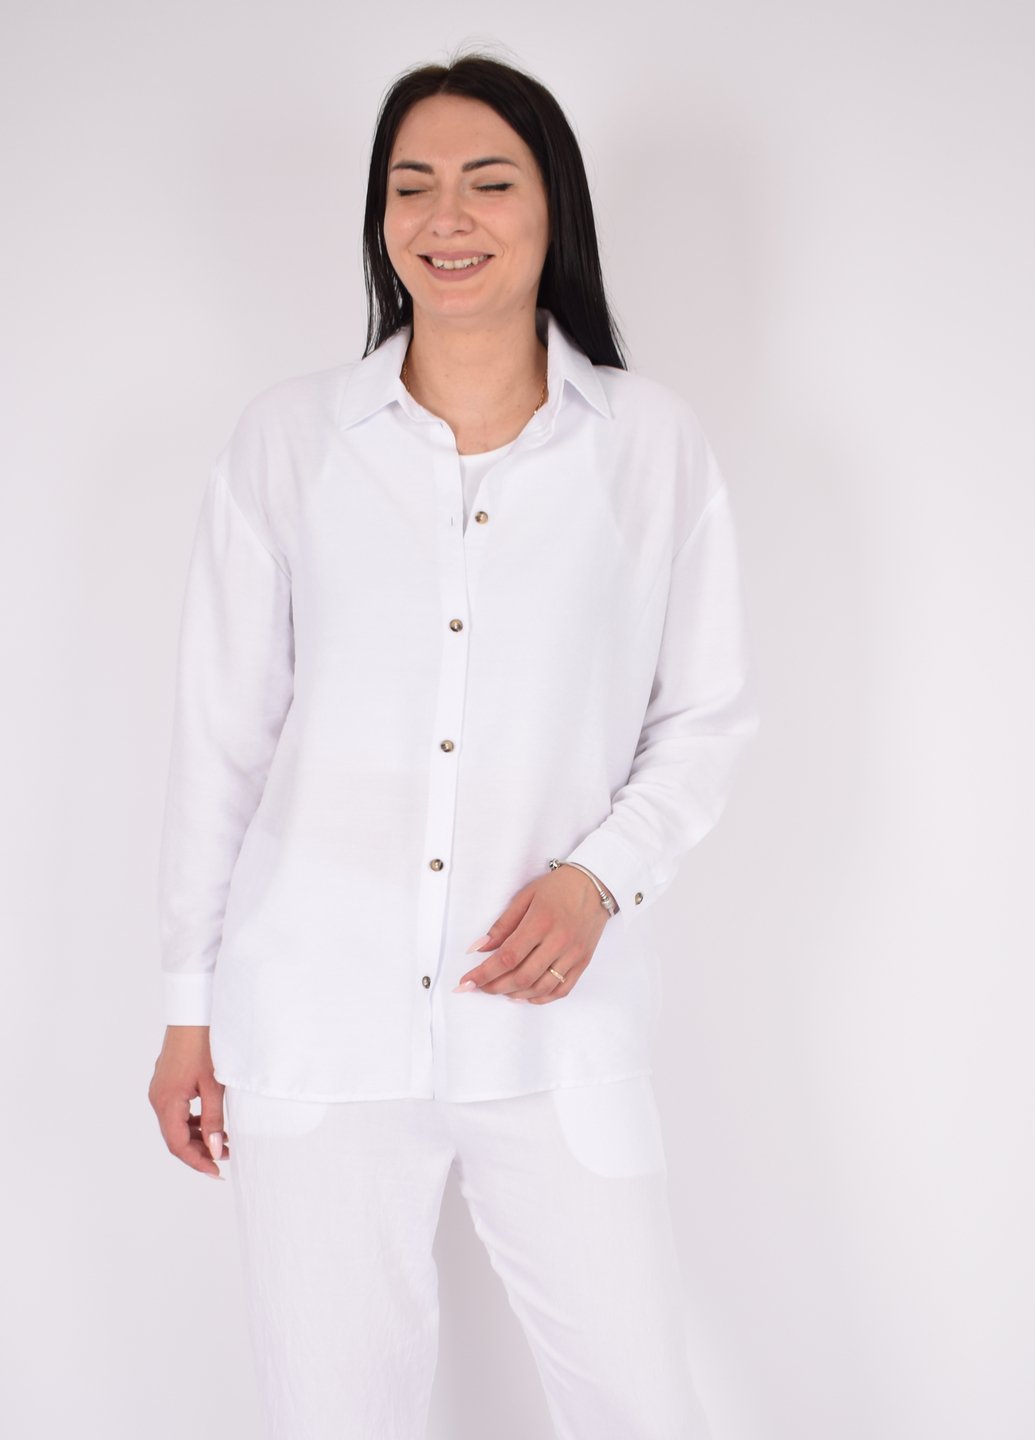 Купить Рубашка женская с длинным рукавом белого цвета из льна Merlini Беллуно 200000069, размер 42-44 в интернет-магазине